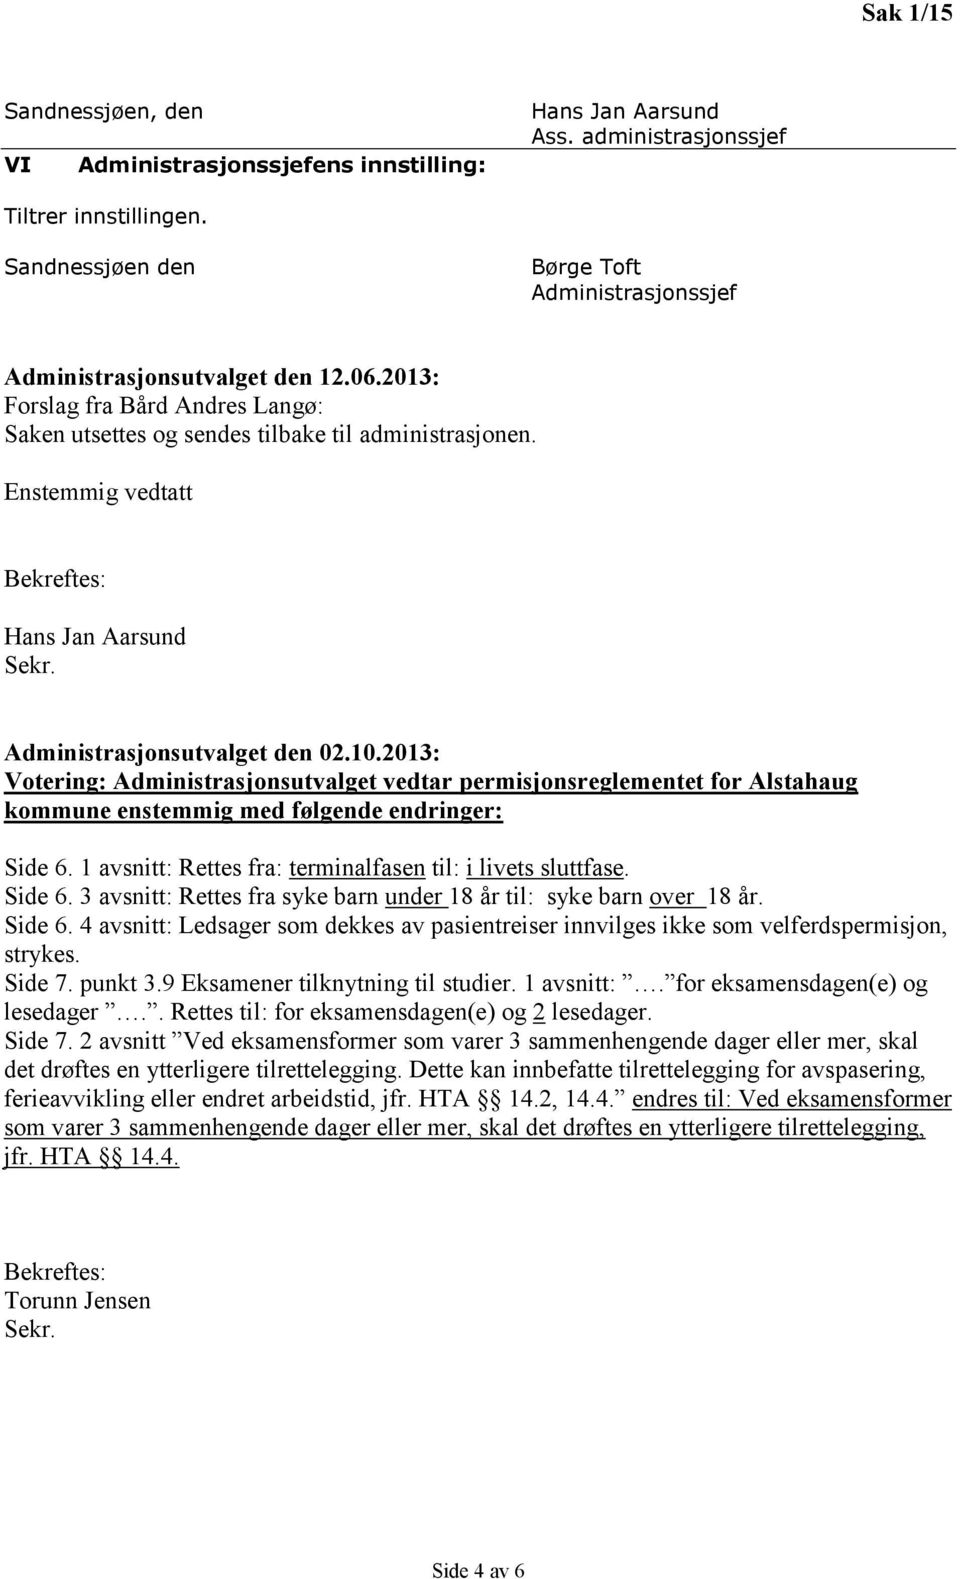 2013: Votering: Administrasjonsutvalget vedtar permisjonsreglementet for Alstahaug kommune enstemmig med følgende endringer: Side 6. 1 avsnitt: Rettes fra: terminalfasen til: i livets sluttfase.